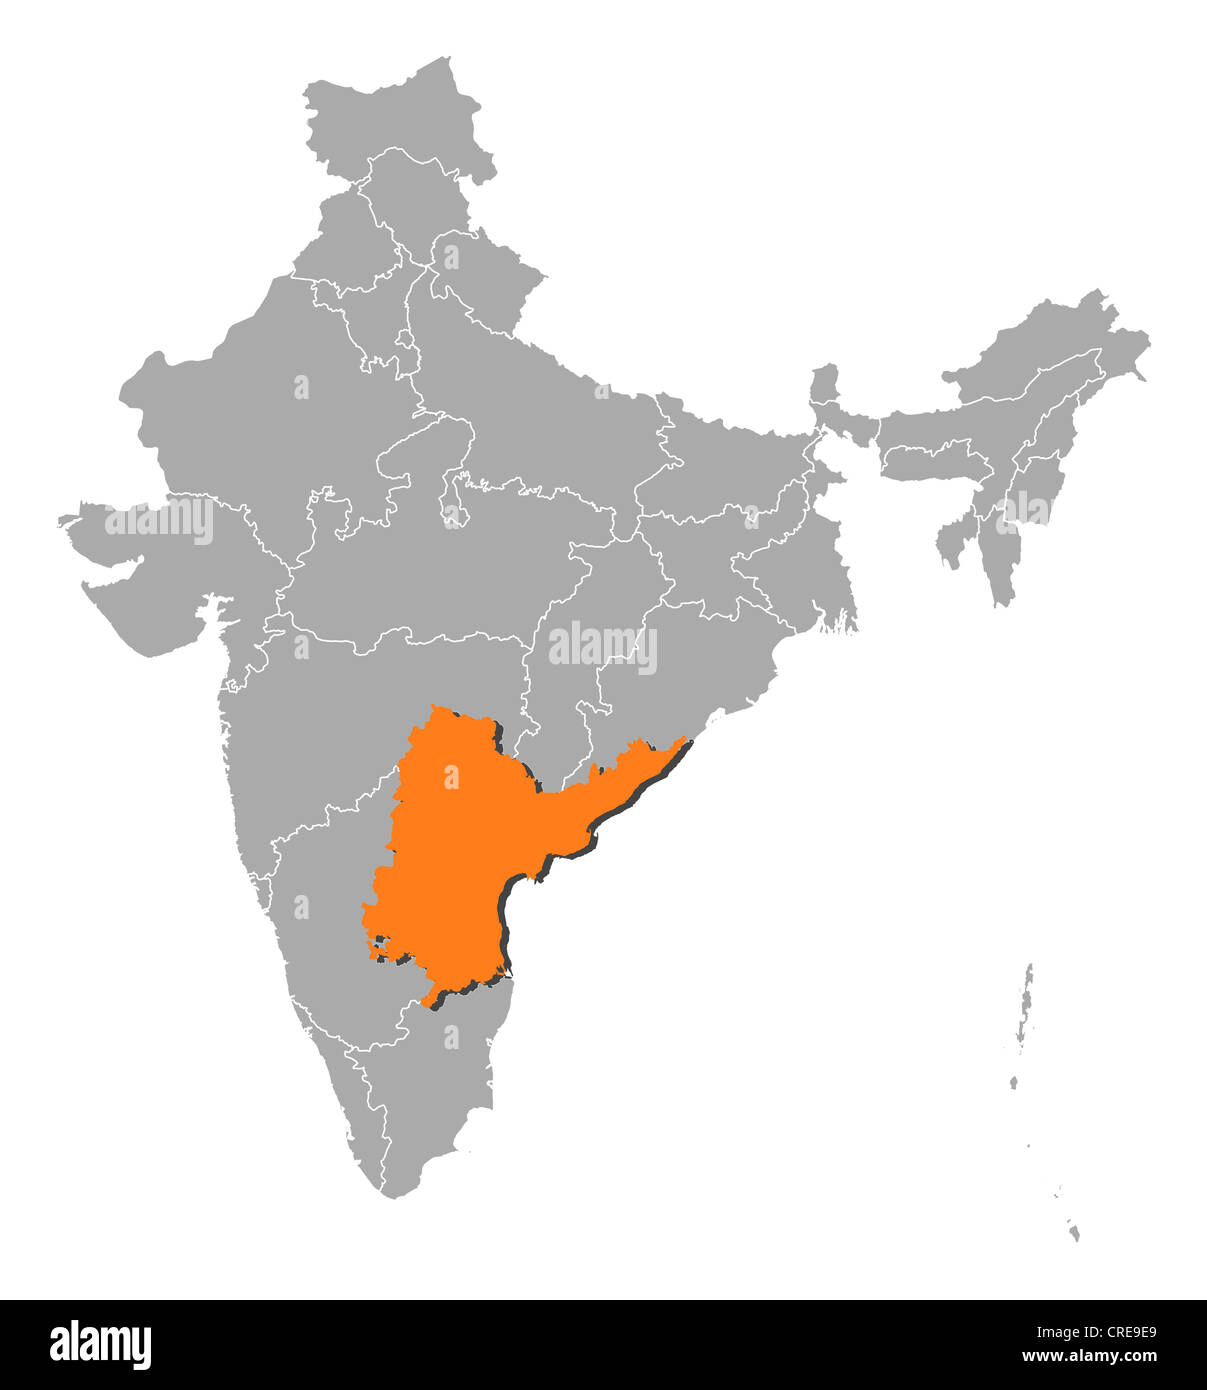 Carte politique de l'Inde avec les divers États où l'Andhra Pradesh est mis en évidence. Banque D'Images